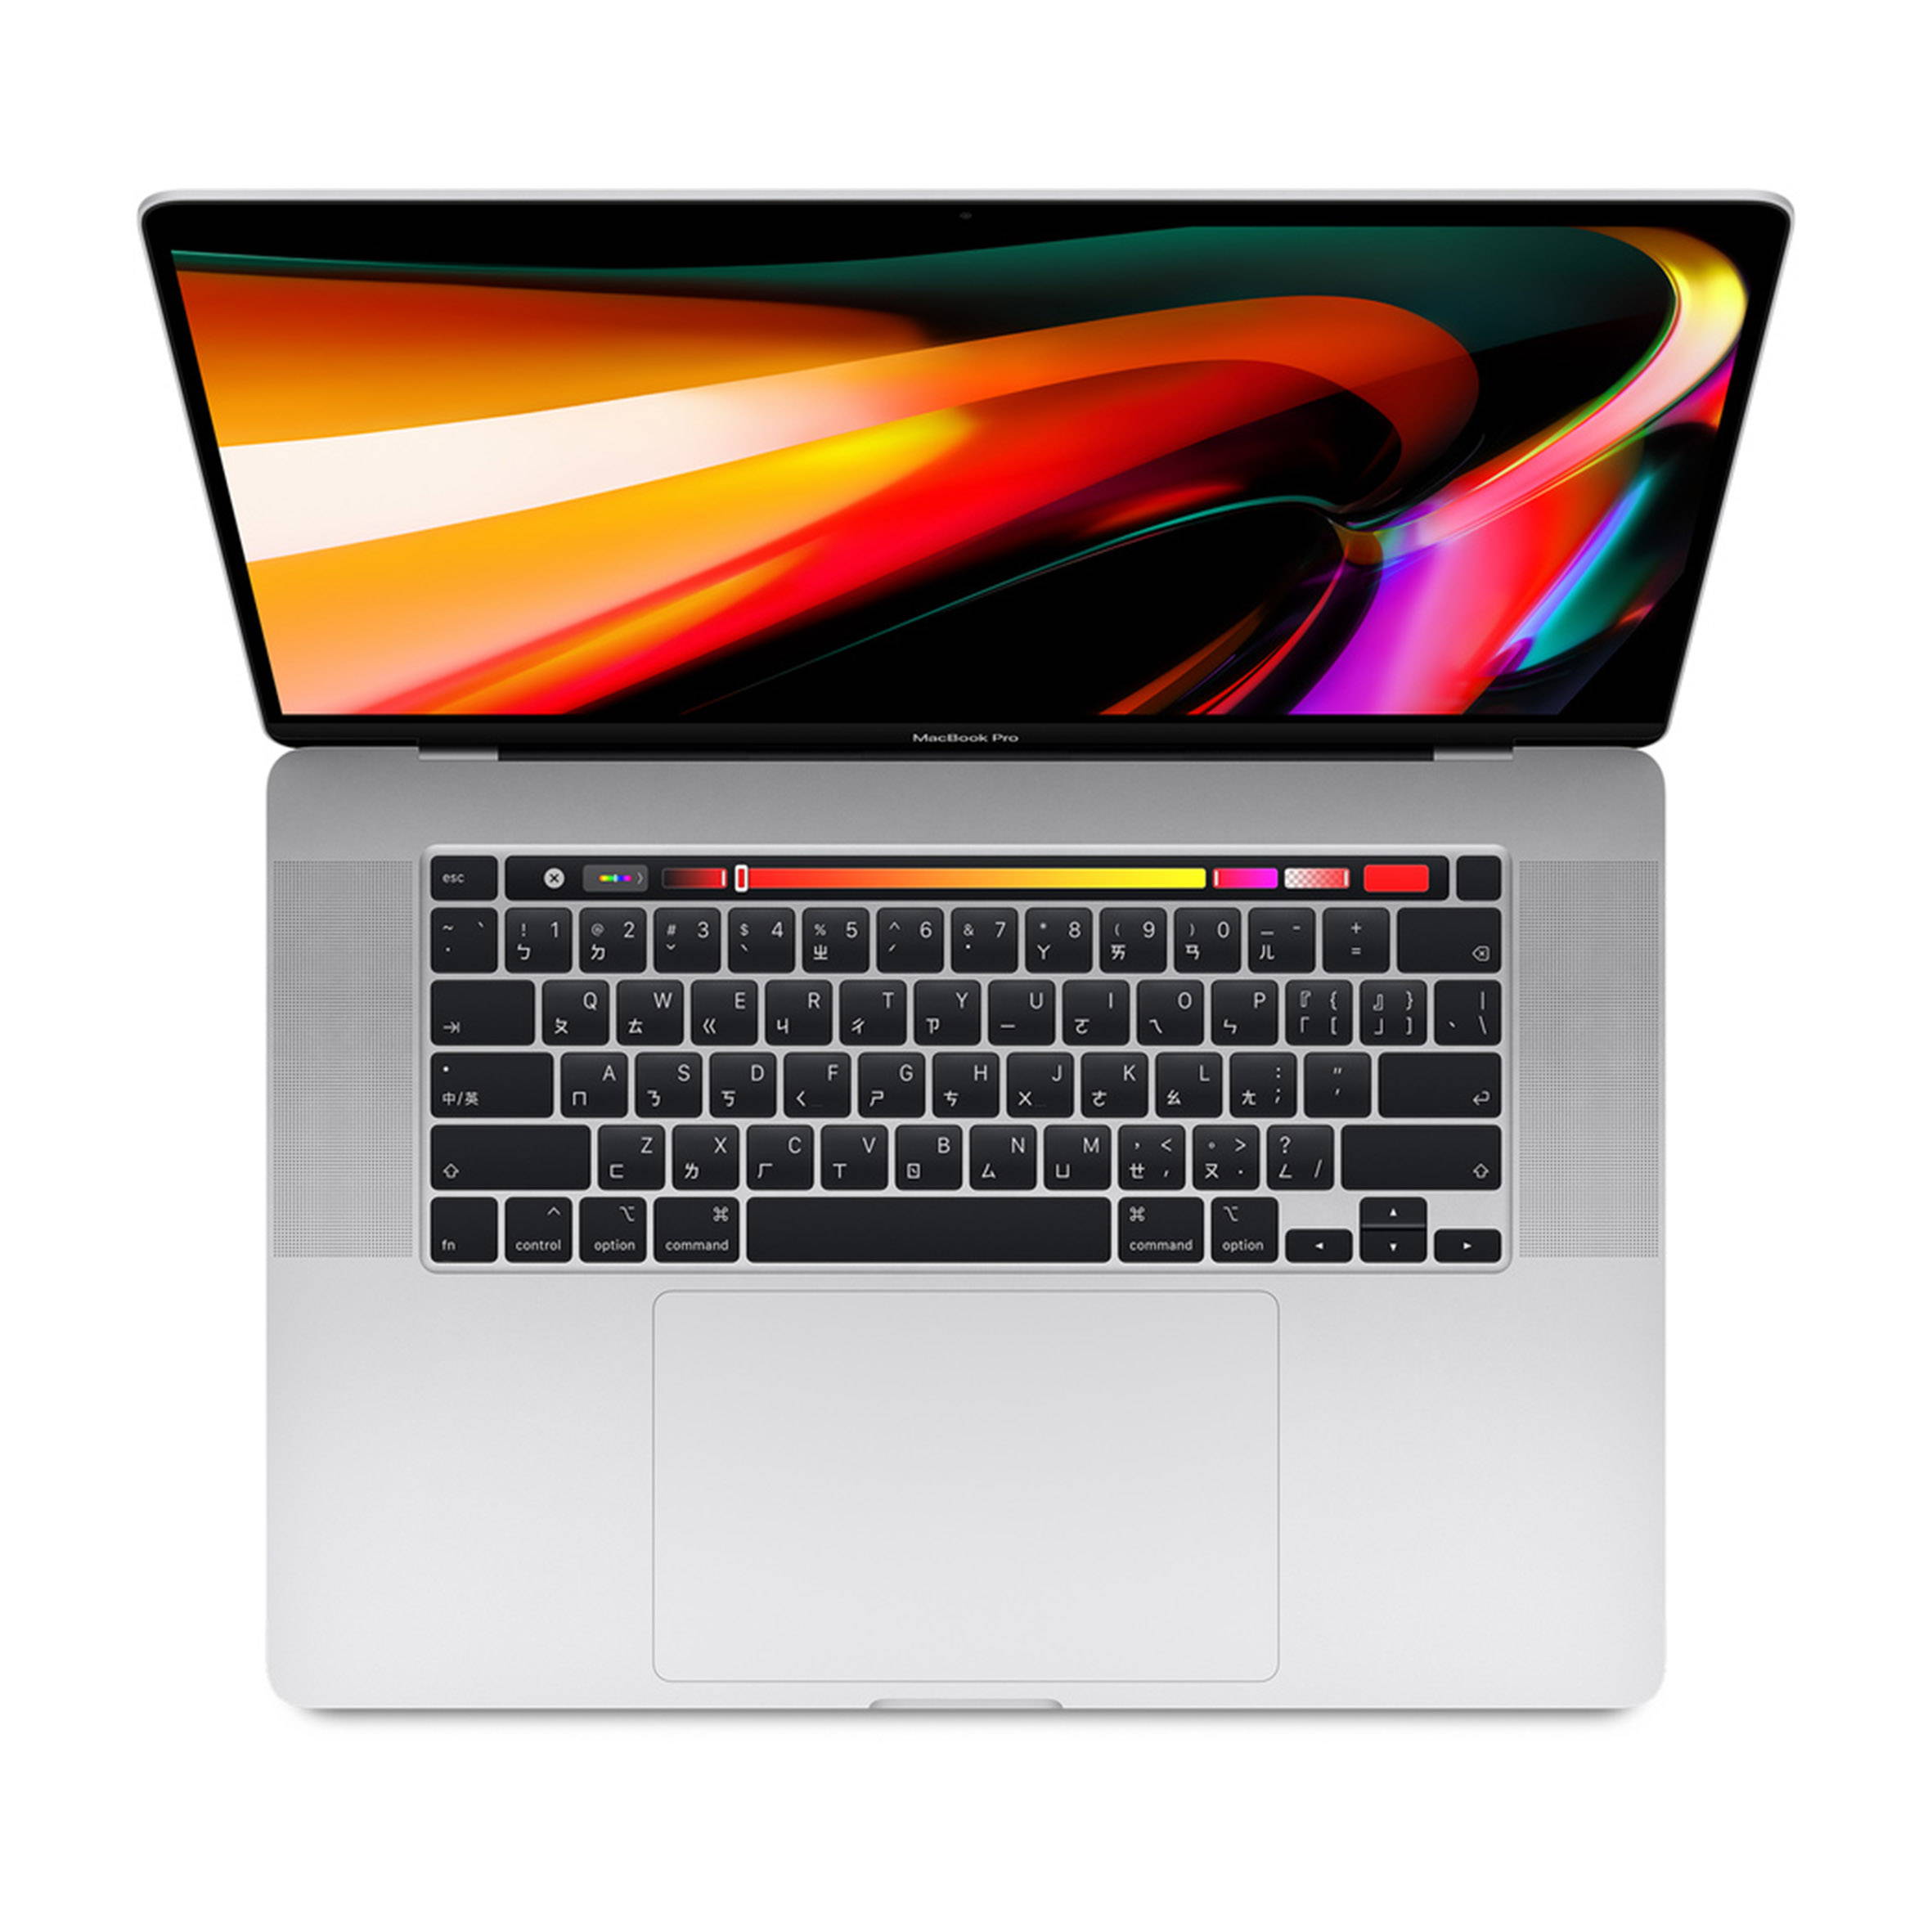 MacBook Pro 16吋 2.6GHz 512GB (2020年新款)